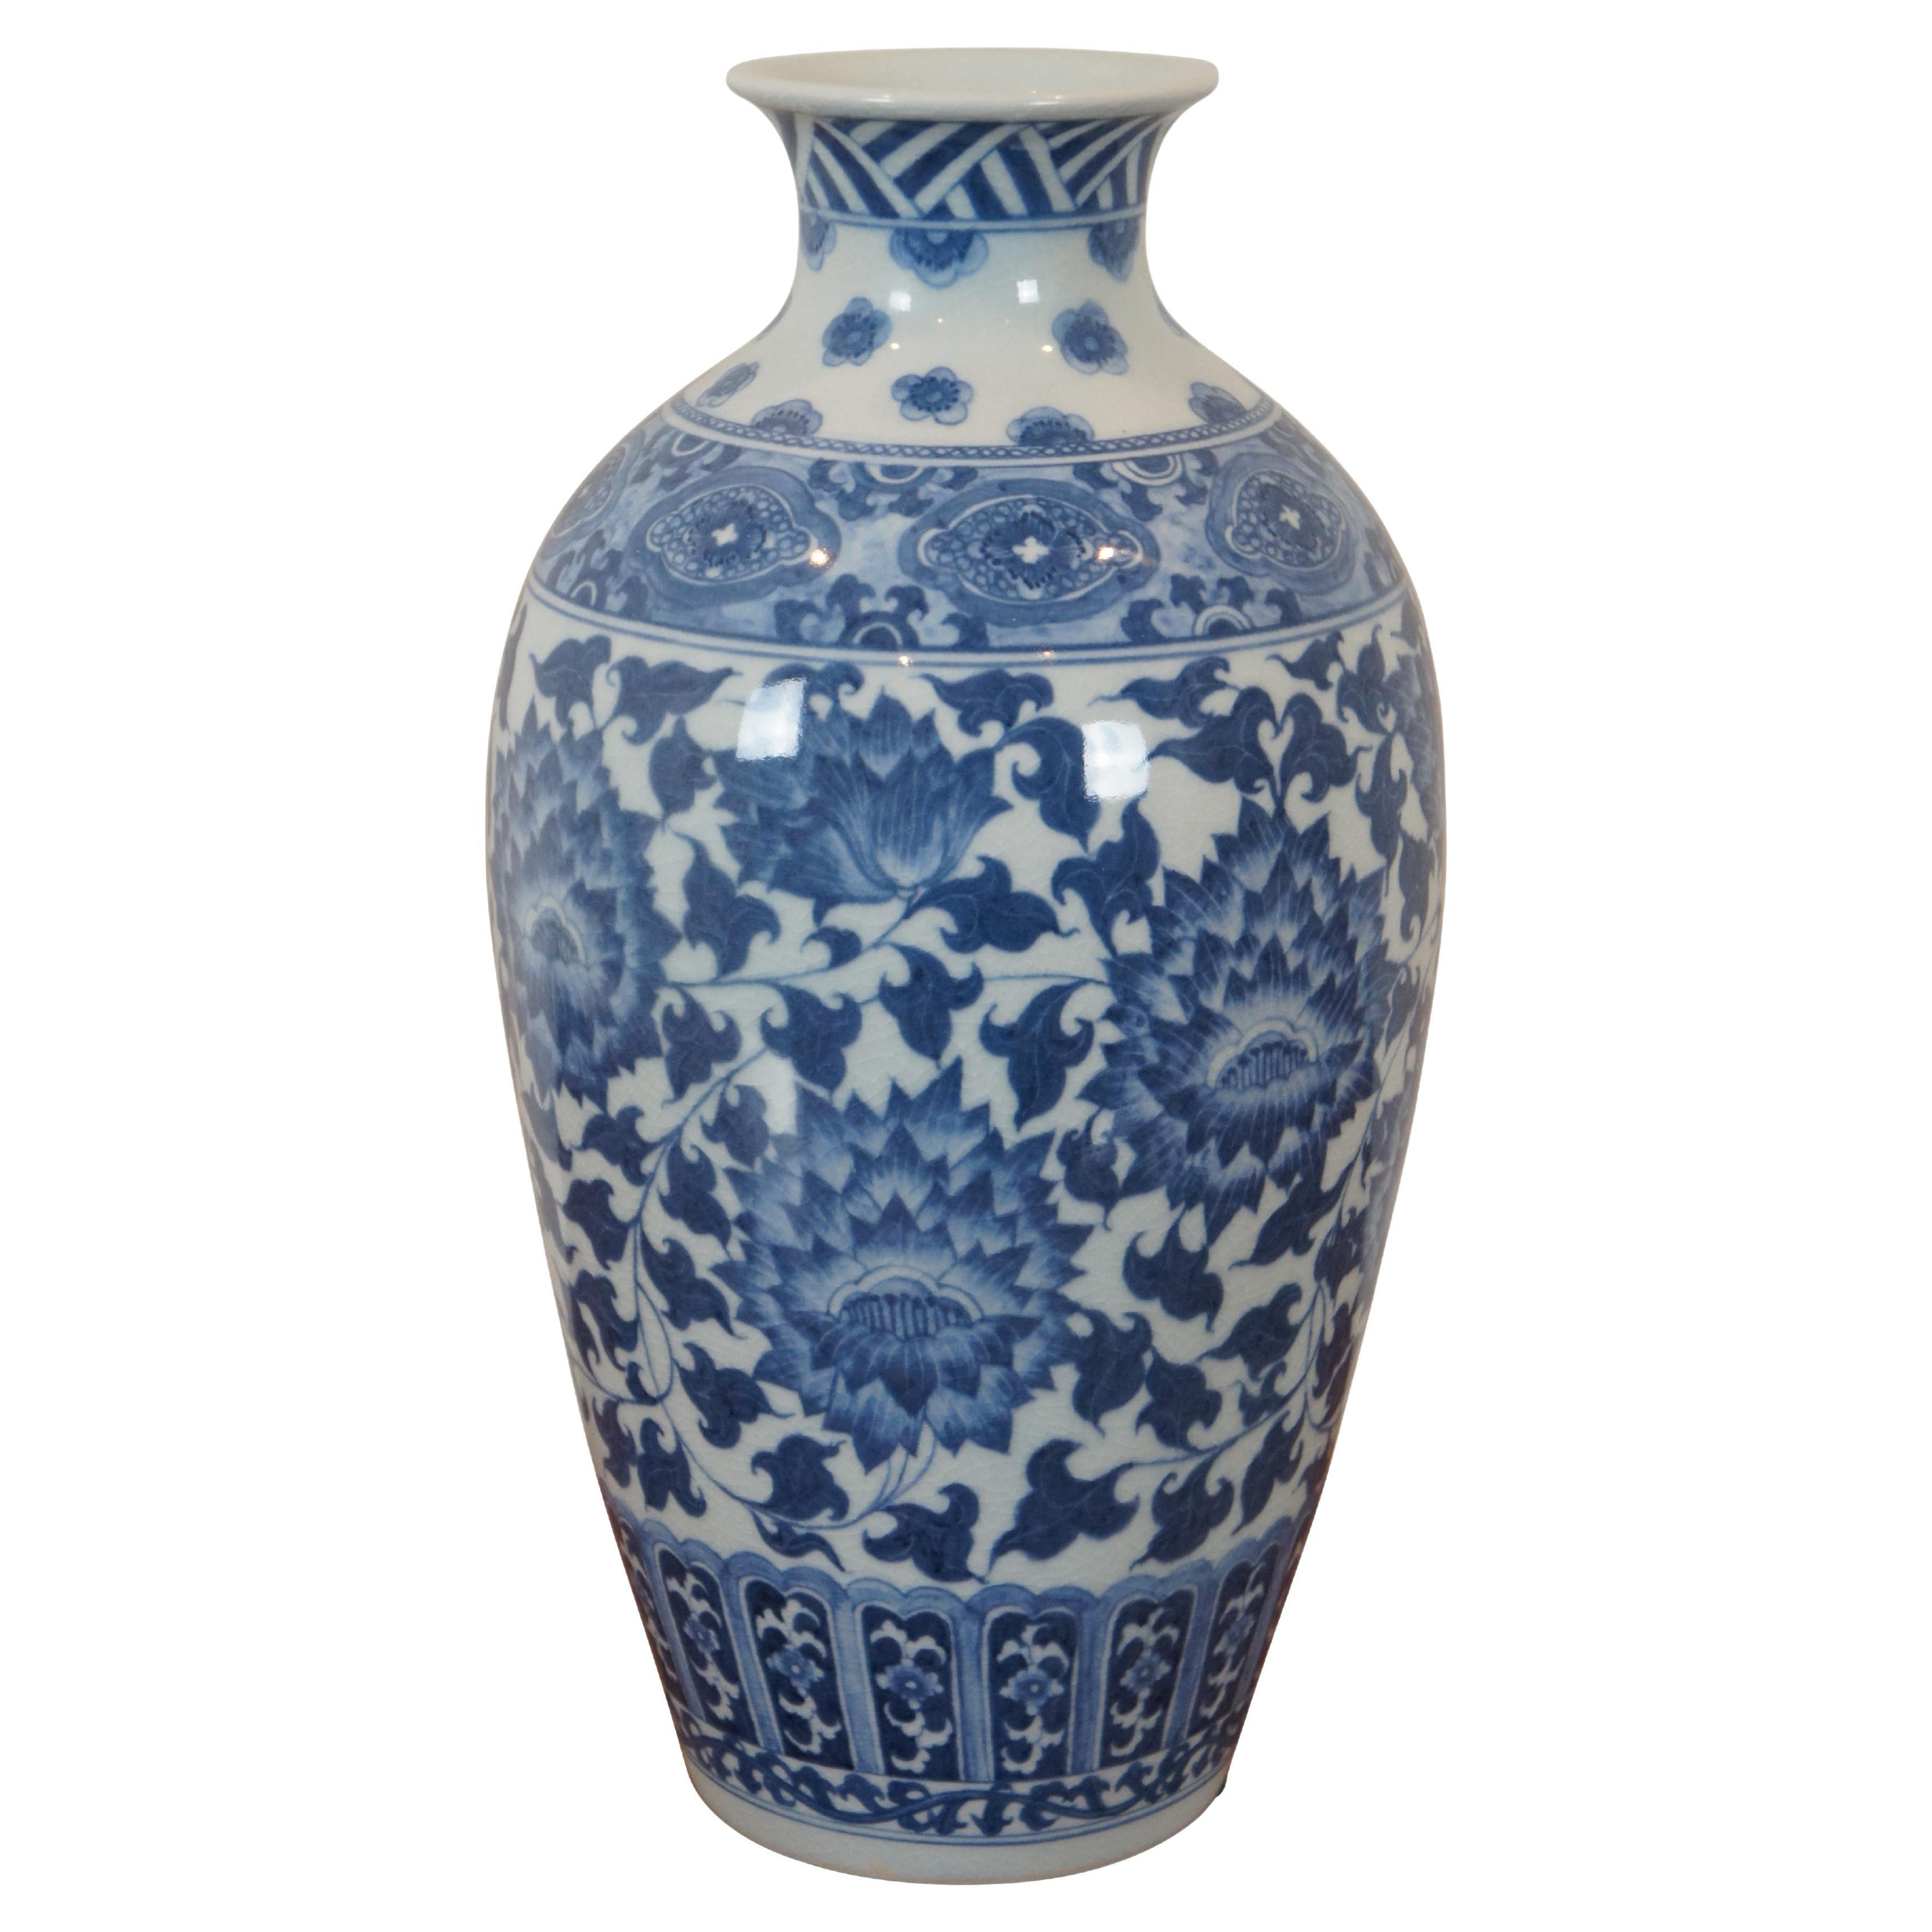 Maitland Smith Blue & White Chinoiserie Porcelain Mantel Vase Flower Urn 15"